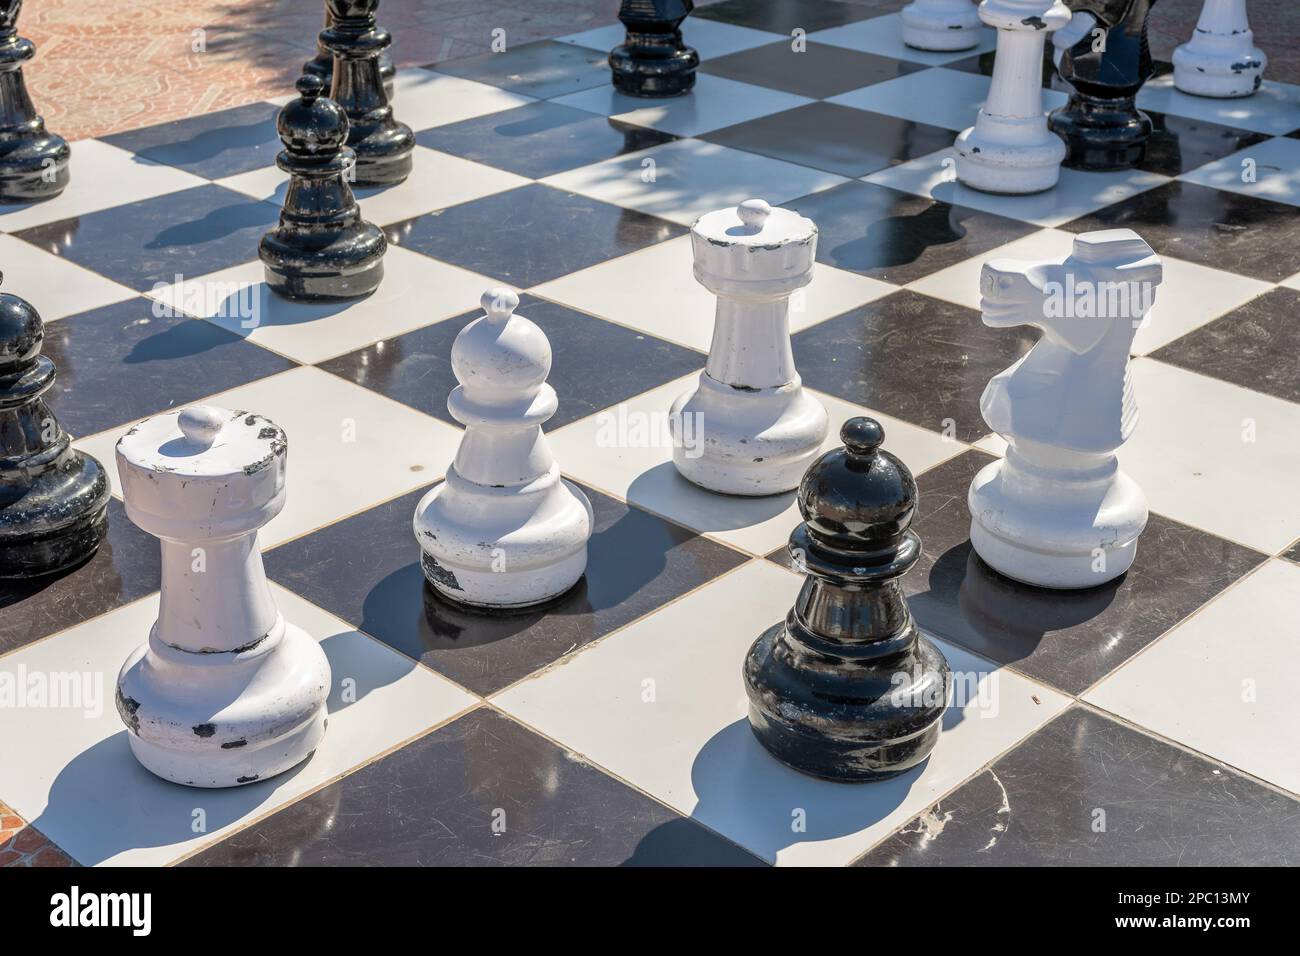 Scacchi Giant gioco da tavolo di scacchi impostato nel giardino. Foto Stock